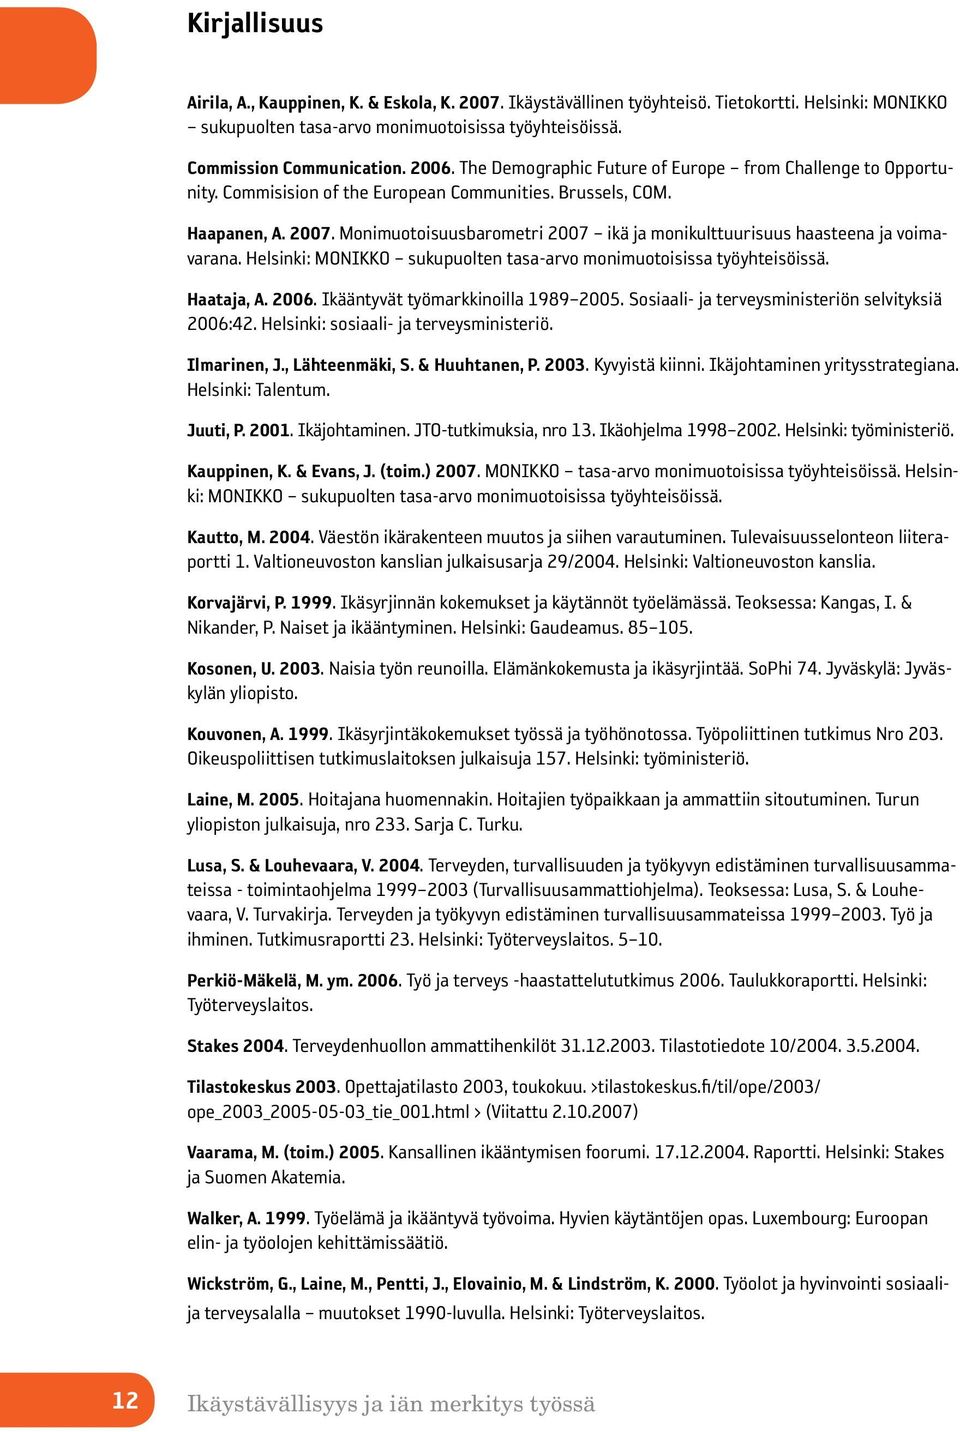 Monimuotoisuusbarometri 2007 ikä ja monikulttuurisuus haasteena ja voimavarana. Helsinki: MONIKKO sukupuolten tasa-arvo monimuotoisissa työyhteisöissä. Haataja, A. 2006.